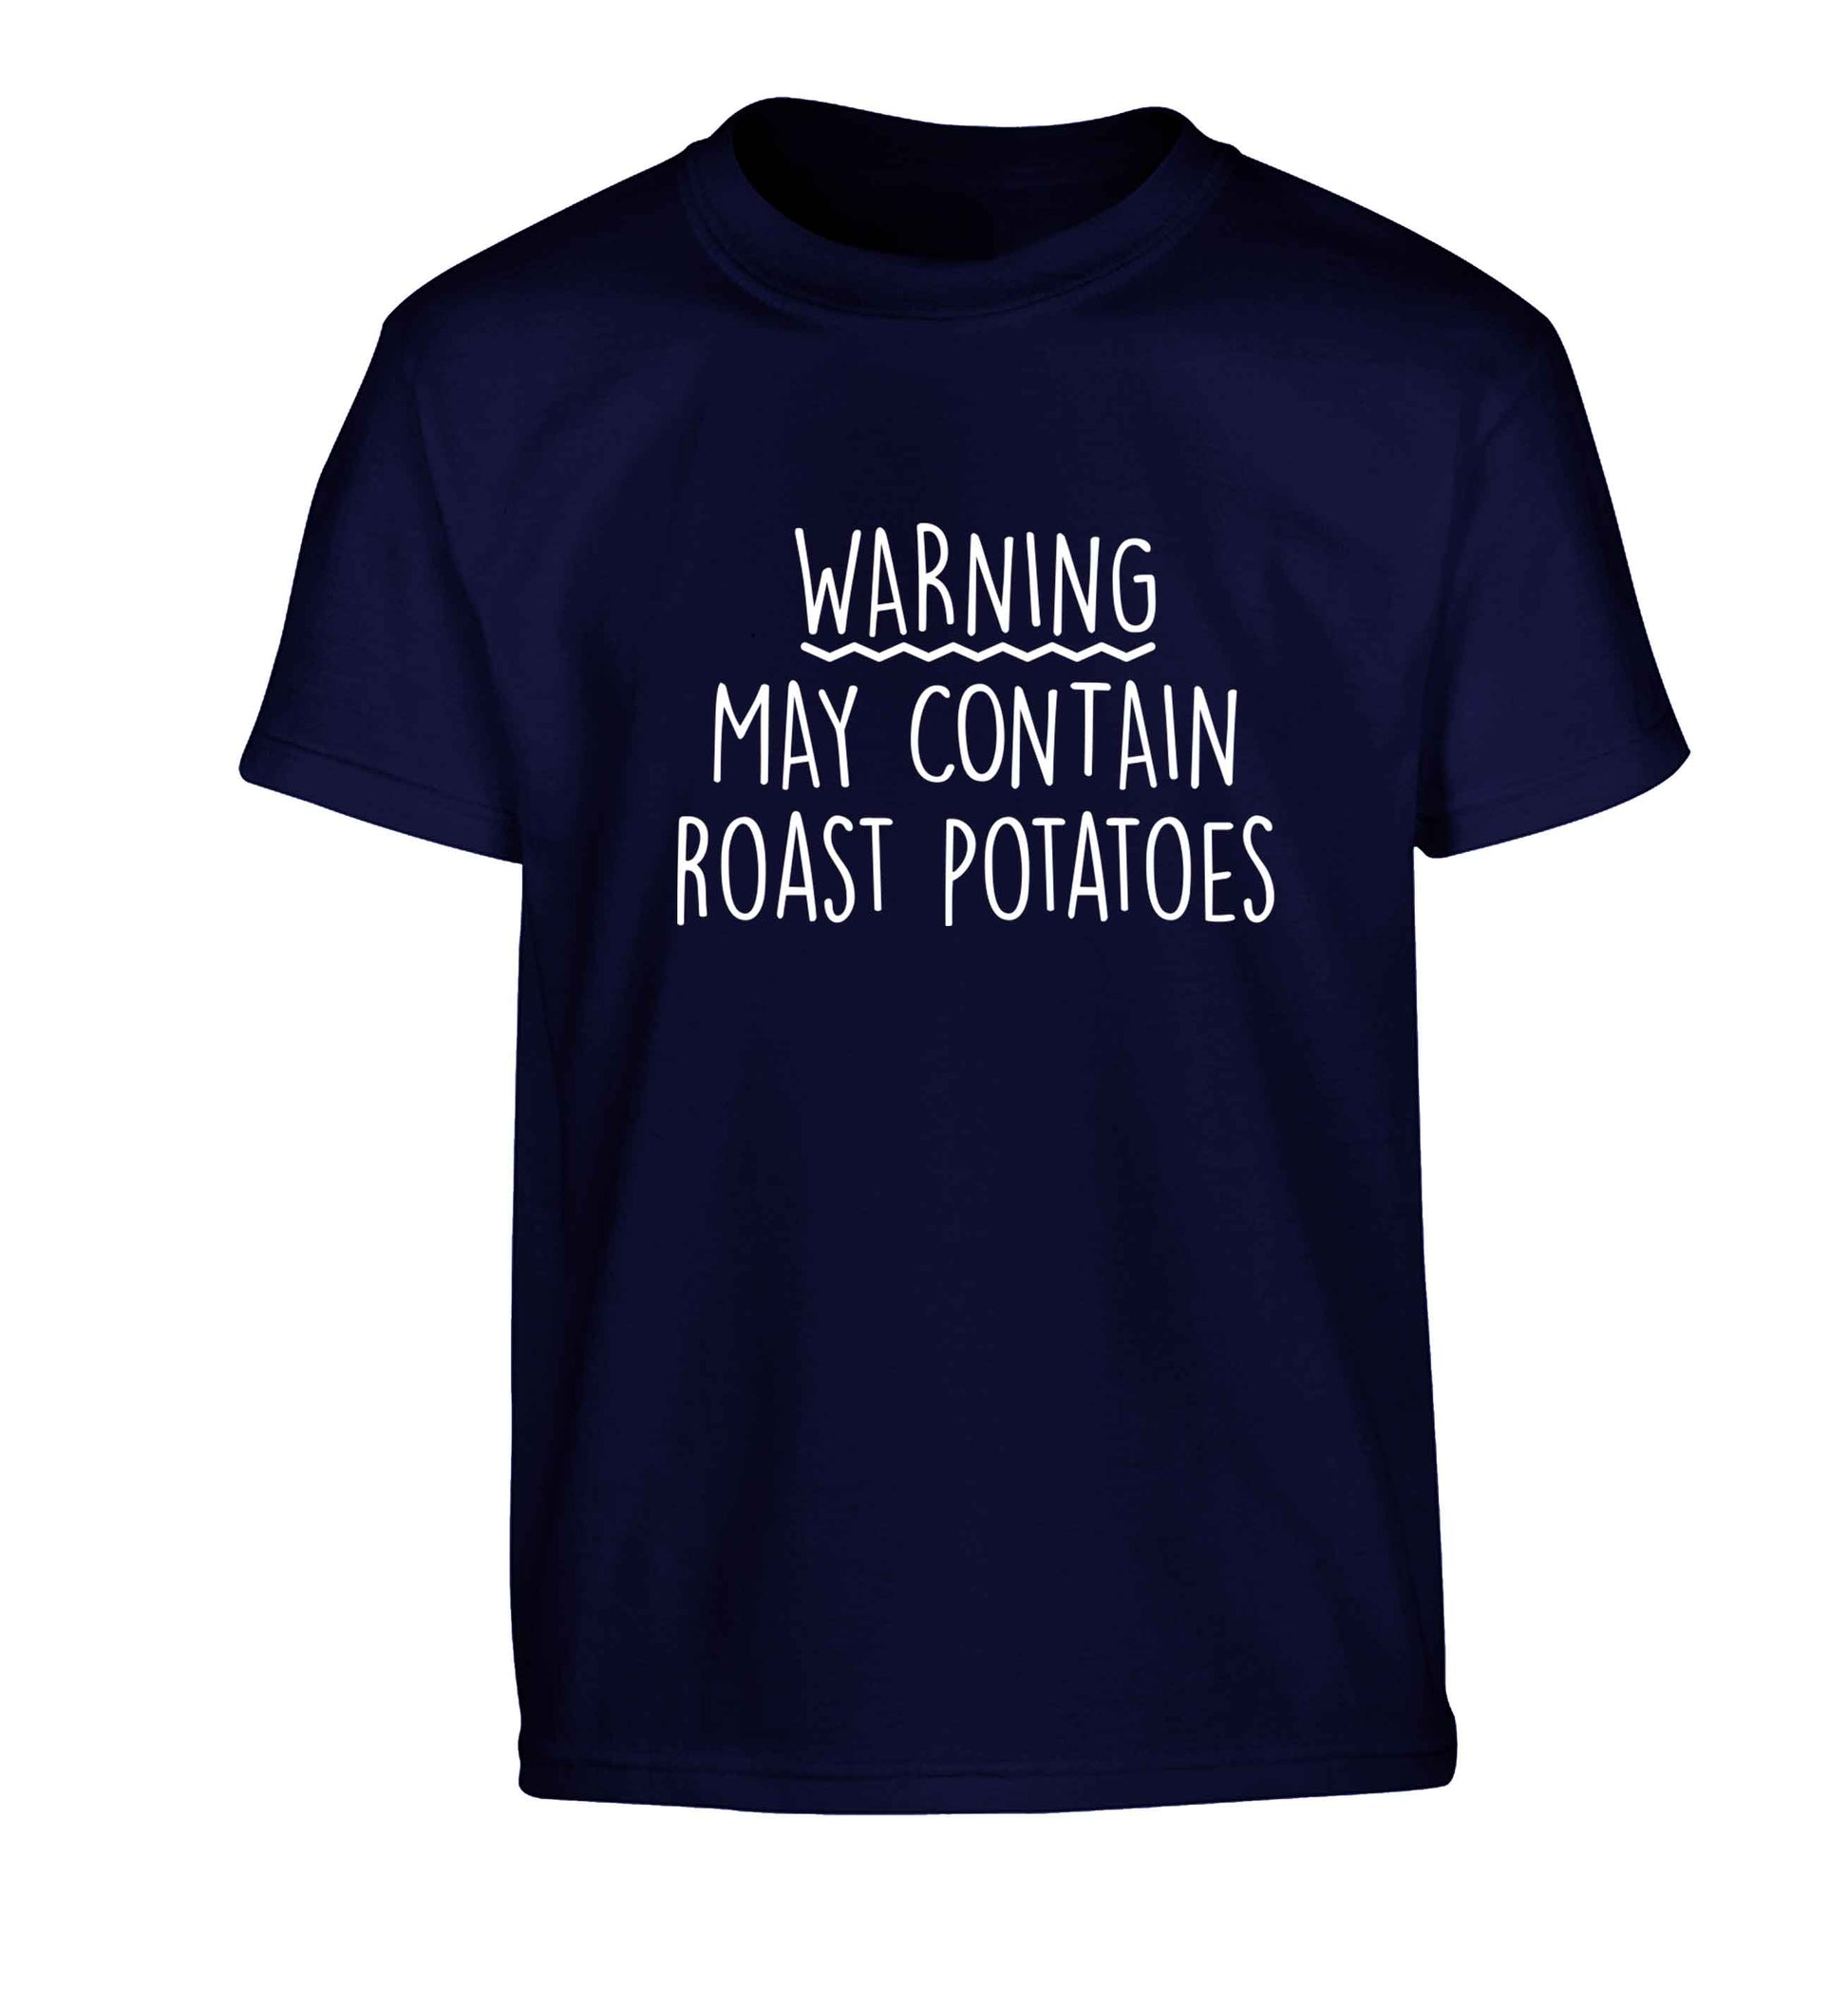 Warning may containg roast potatoes Children's navy Tshirt 12-13 Years